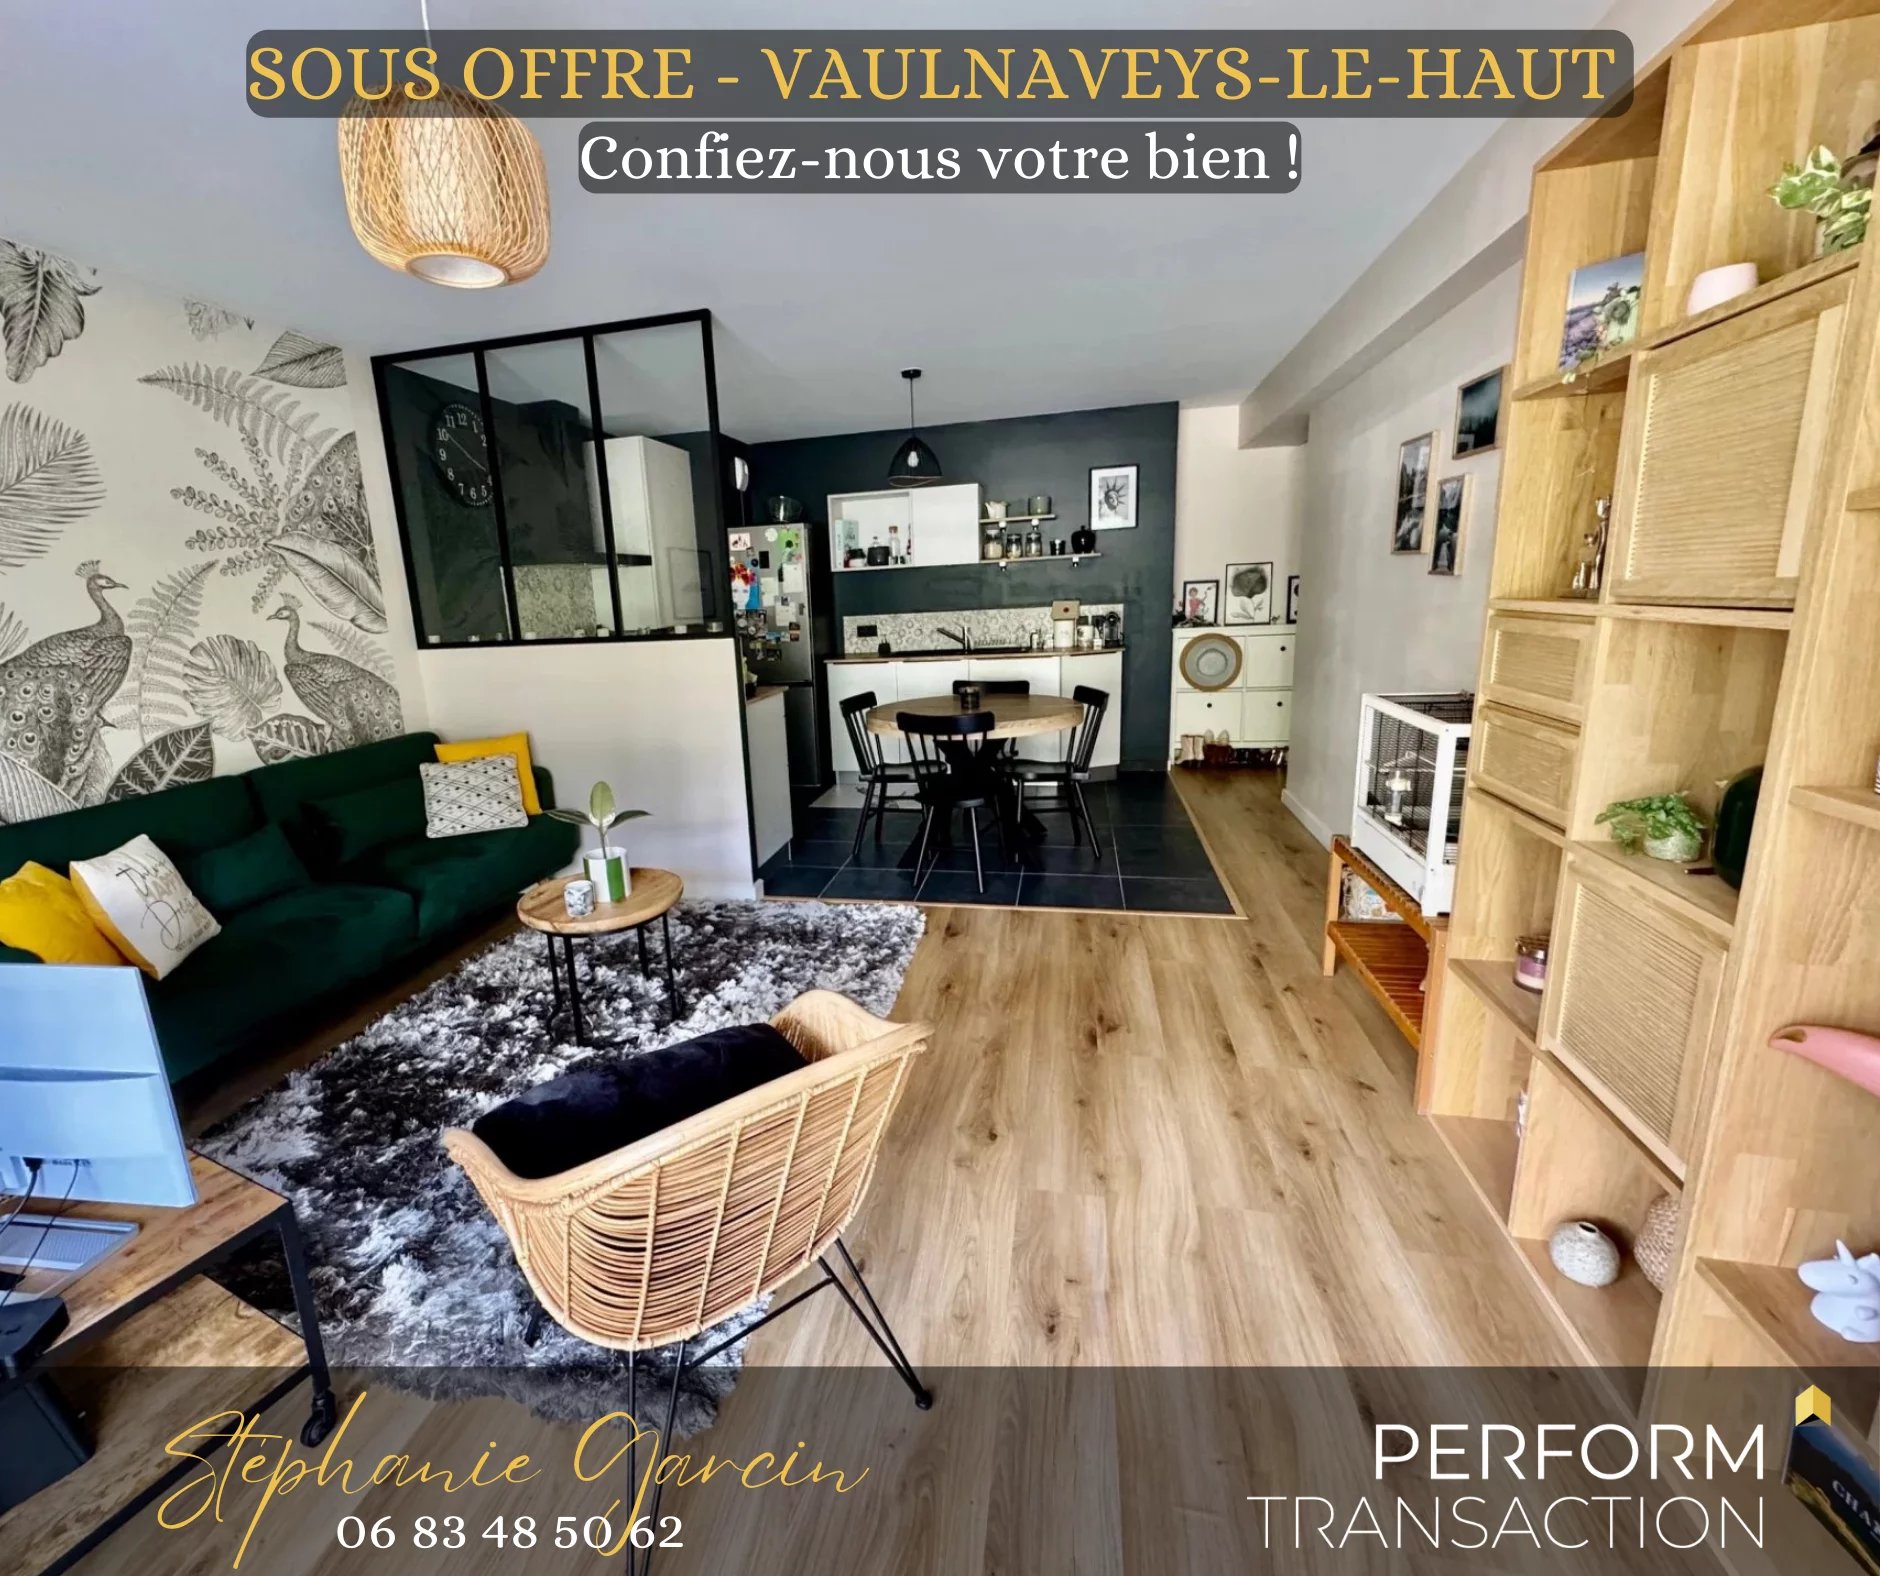 Appartement 3 pièces - 68m² - VAULNAVEYS LE HAUT